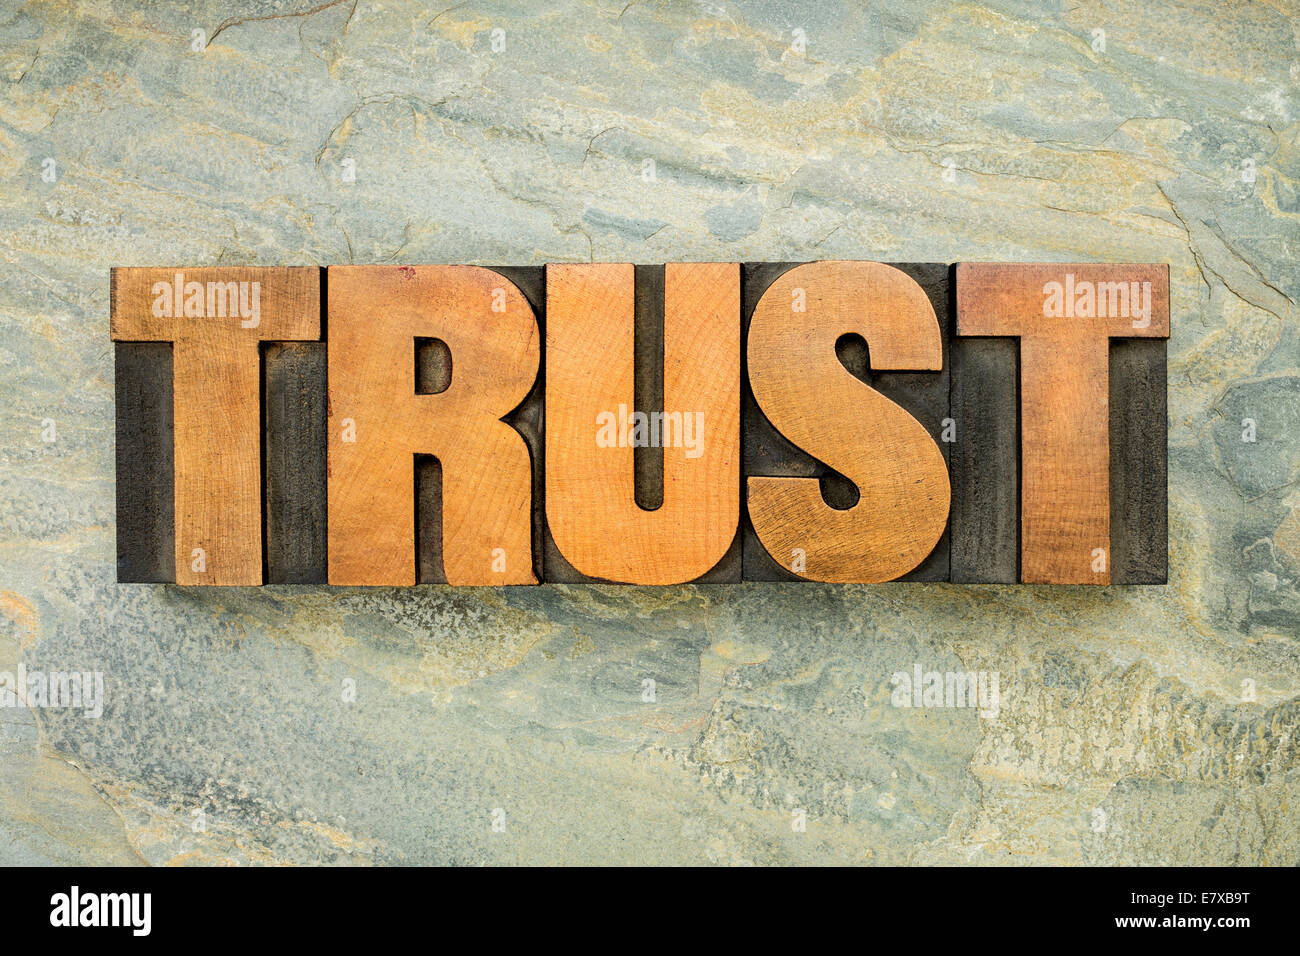 Vertrauen - ein Wort in Vintage Buchdruck Holzart auf grünem Schiefer Felsen Hintergrund Stockfoto